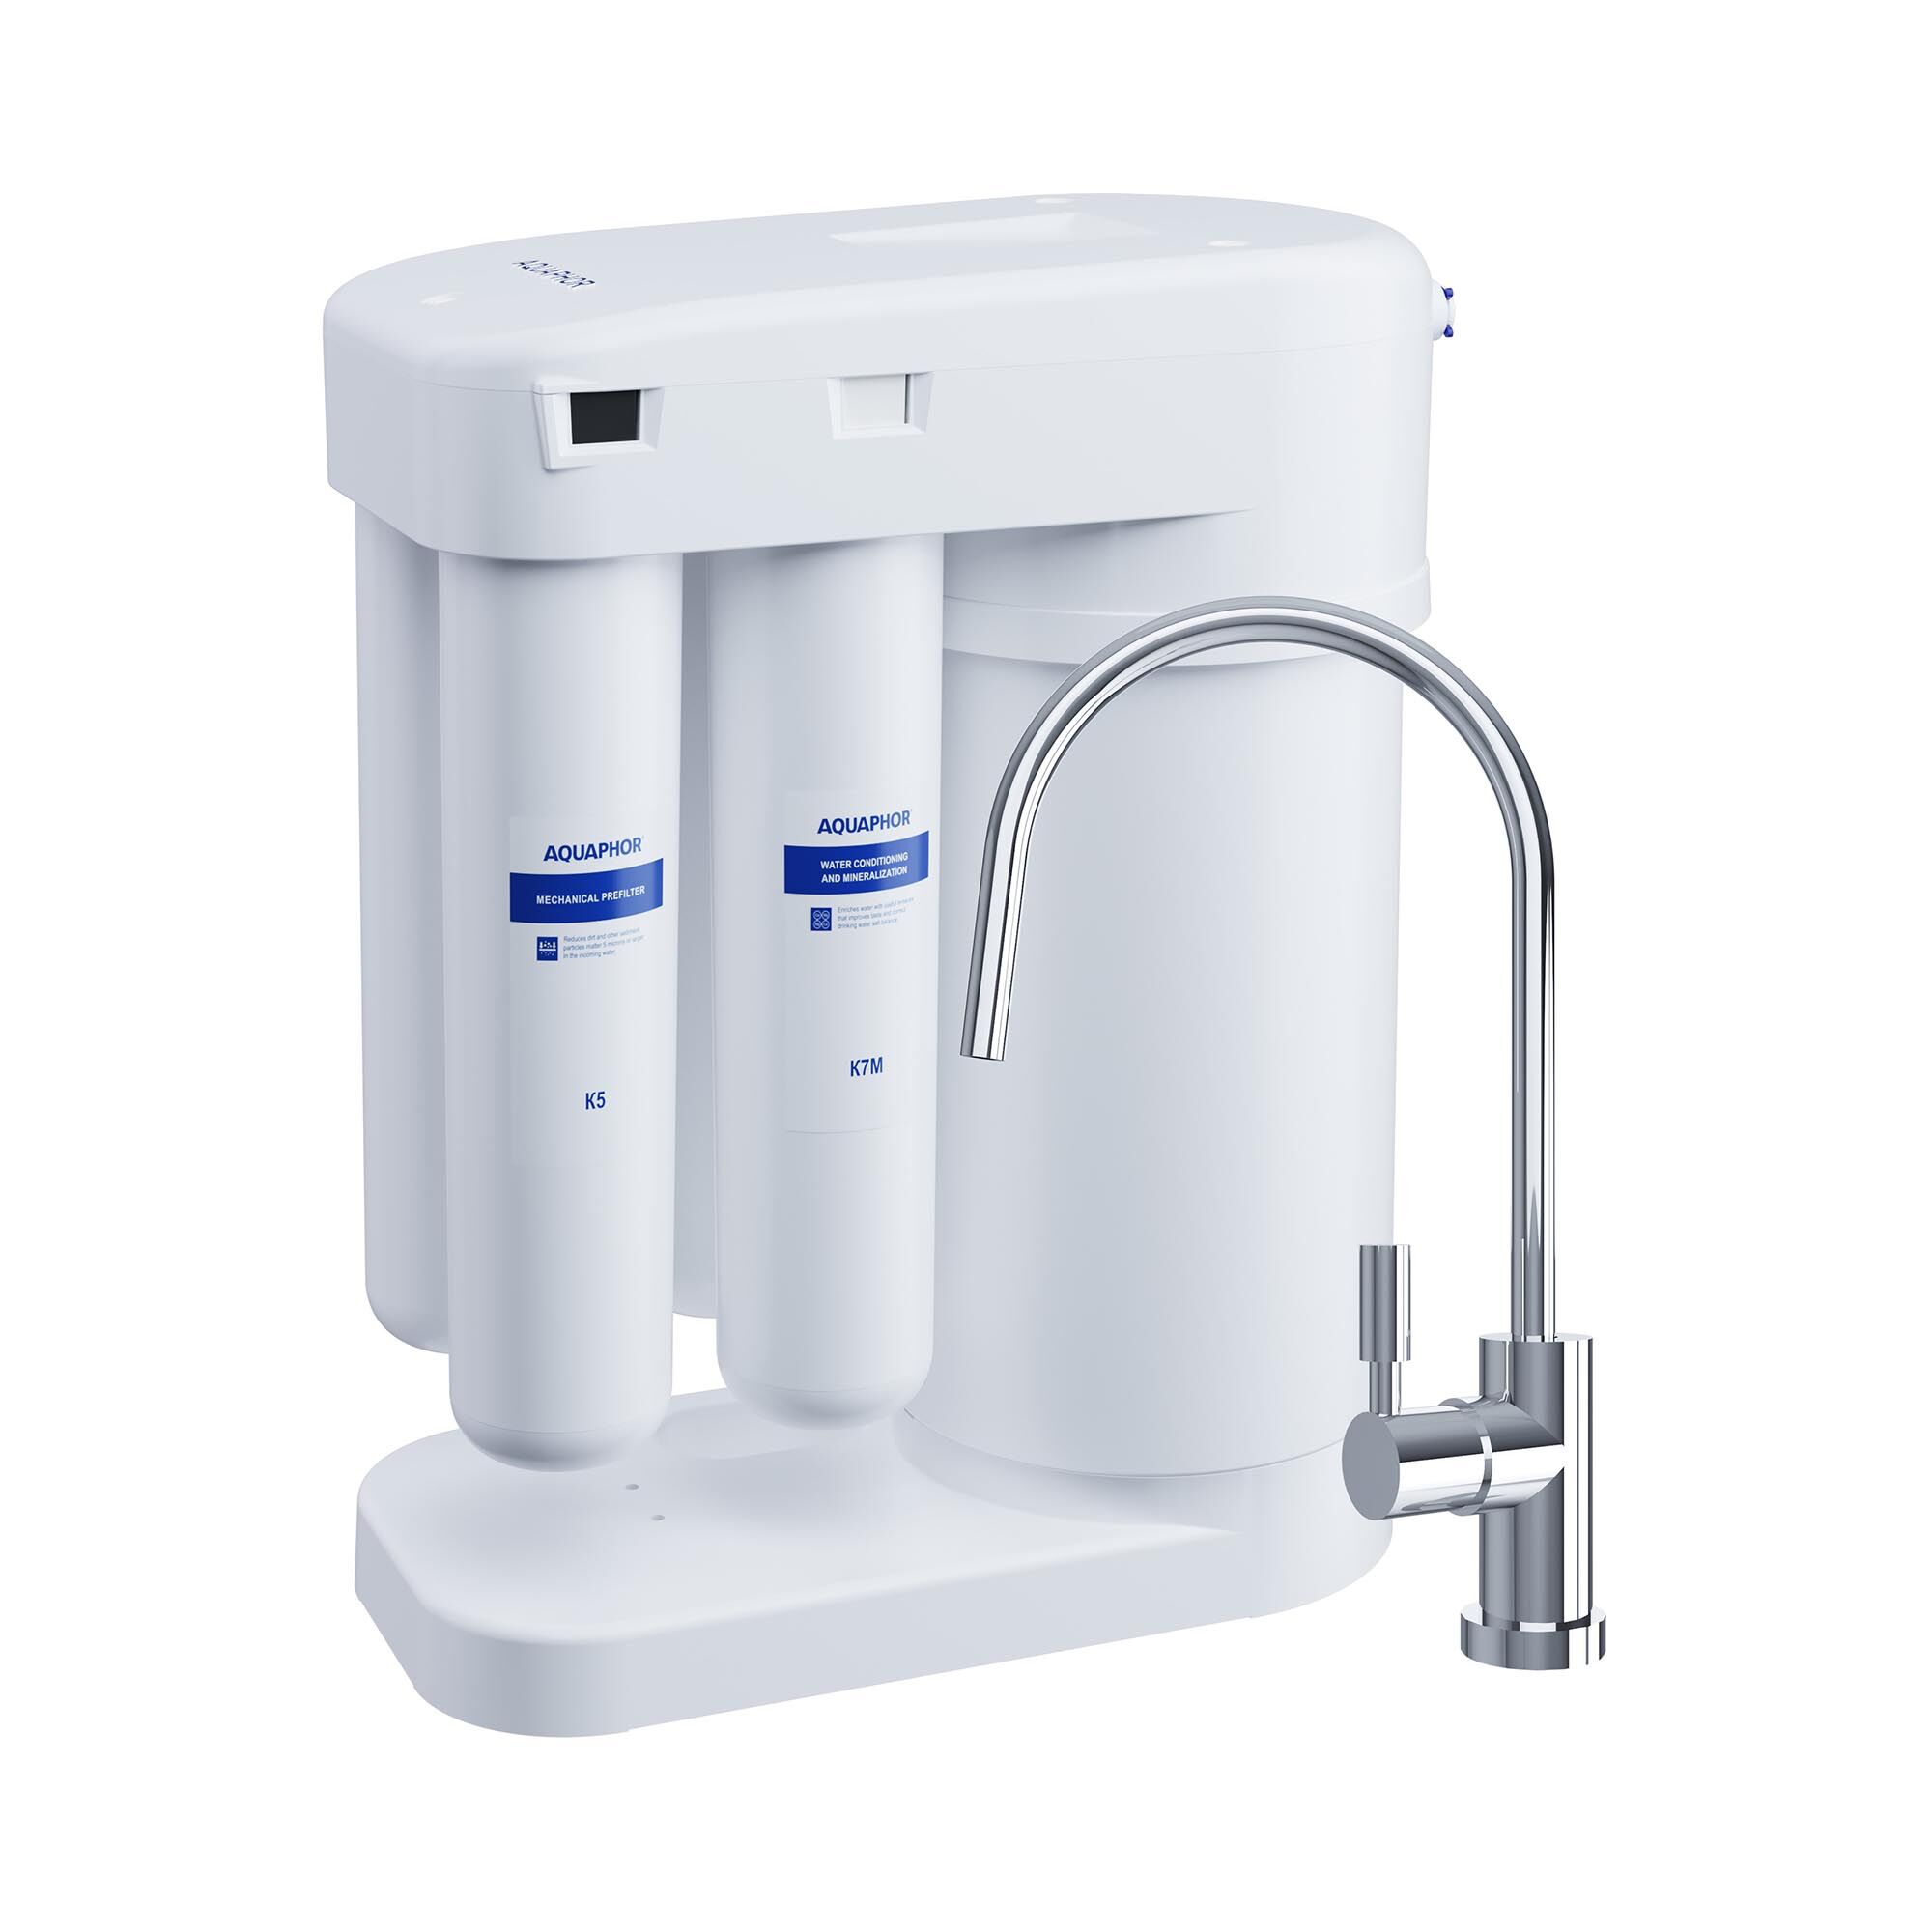 Aquaphor omgekeerde osmose waterfiltersysteem - 190 l / dag - met kraan 10310003